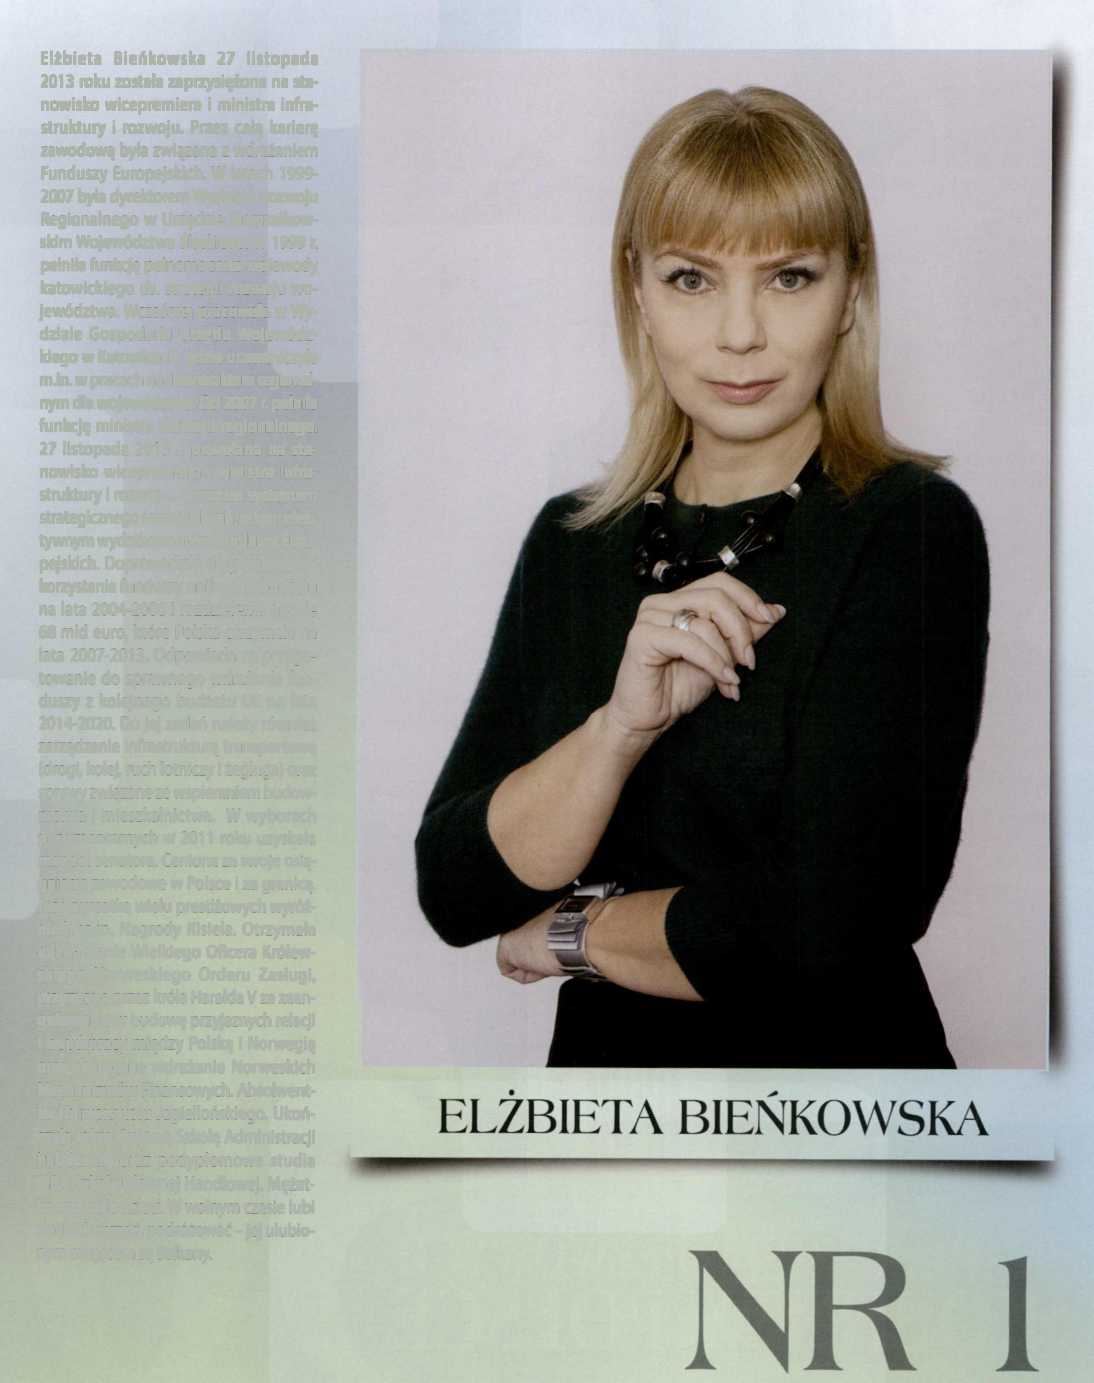 Elżbieta Bieńkowska 27 listopada 2013 roku została zaprzysiężona na stanowisko wicepremiera i ministra infrastruktury i rozwoju.